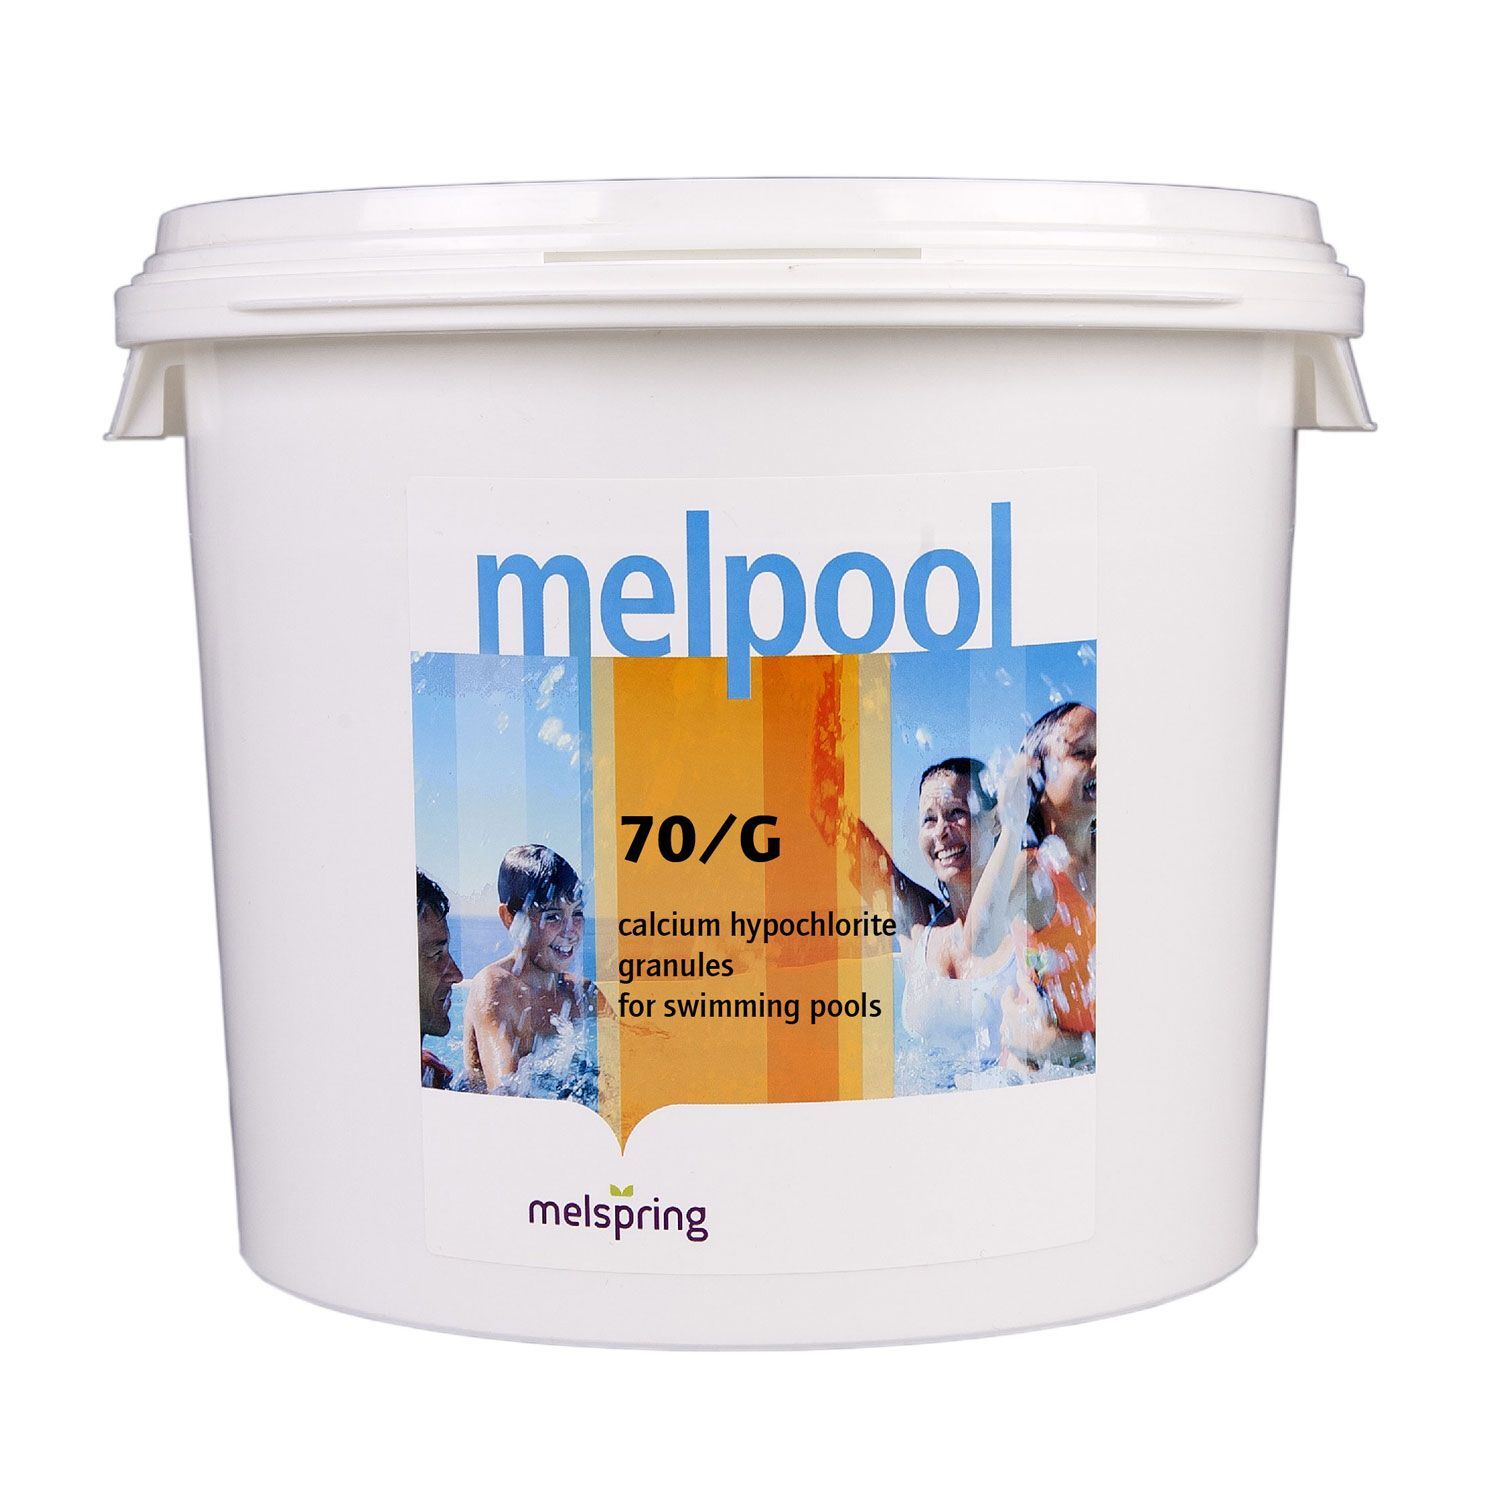 Химия для бассейна Melpool 70/G 45 кг в гранулах